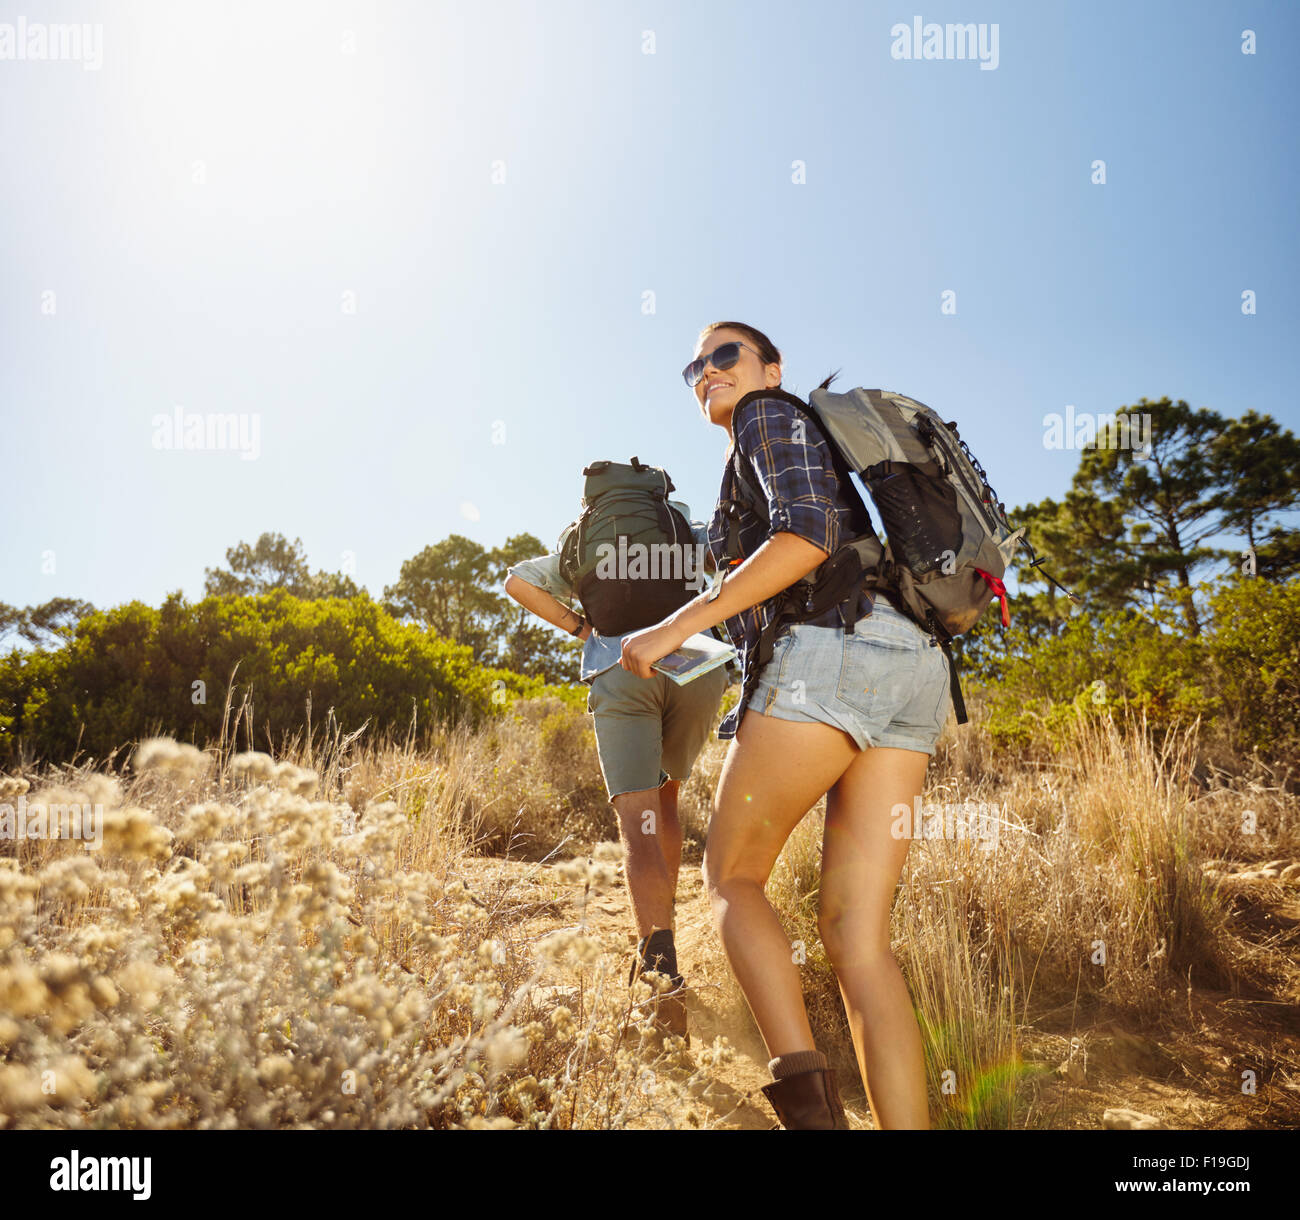 Des jeunes faisant une montée lors d'une randonnée dans la campagne environnante. Femme avec la carte la recherche en arrière sur son épaule en souriant avec man wa Banque D'Images